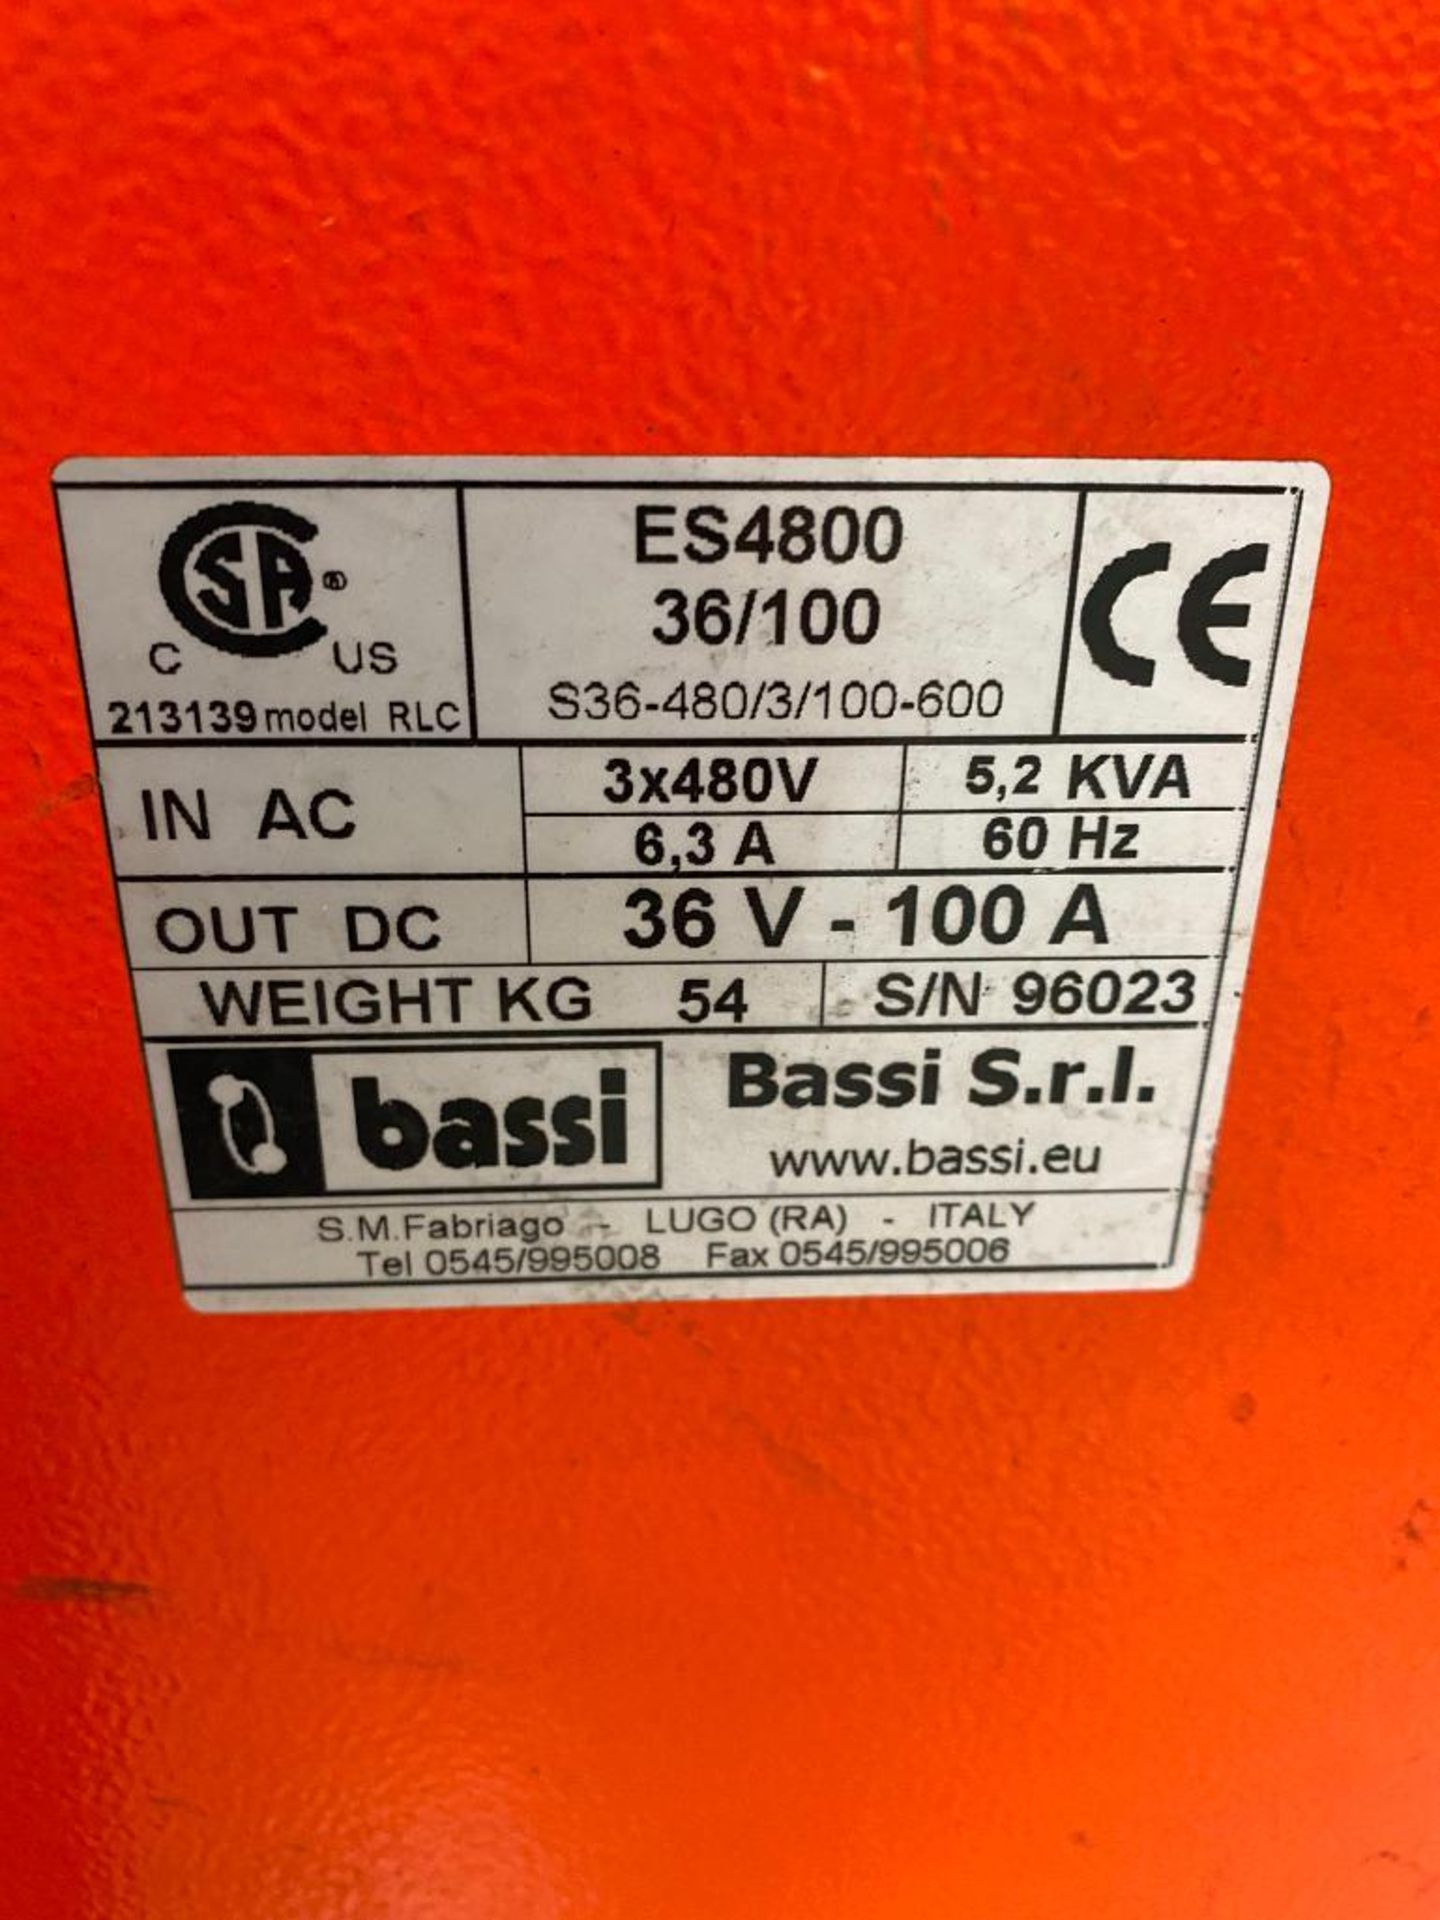 Bassi Eagle Smart 36 V Battery Charger - Image 2 of 4